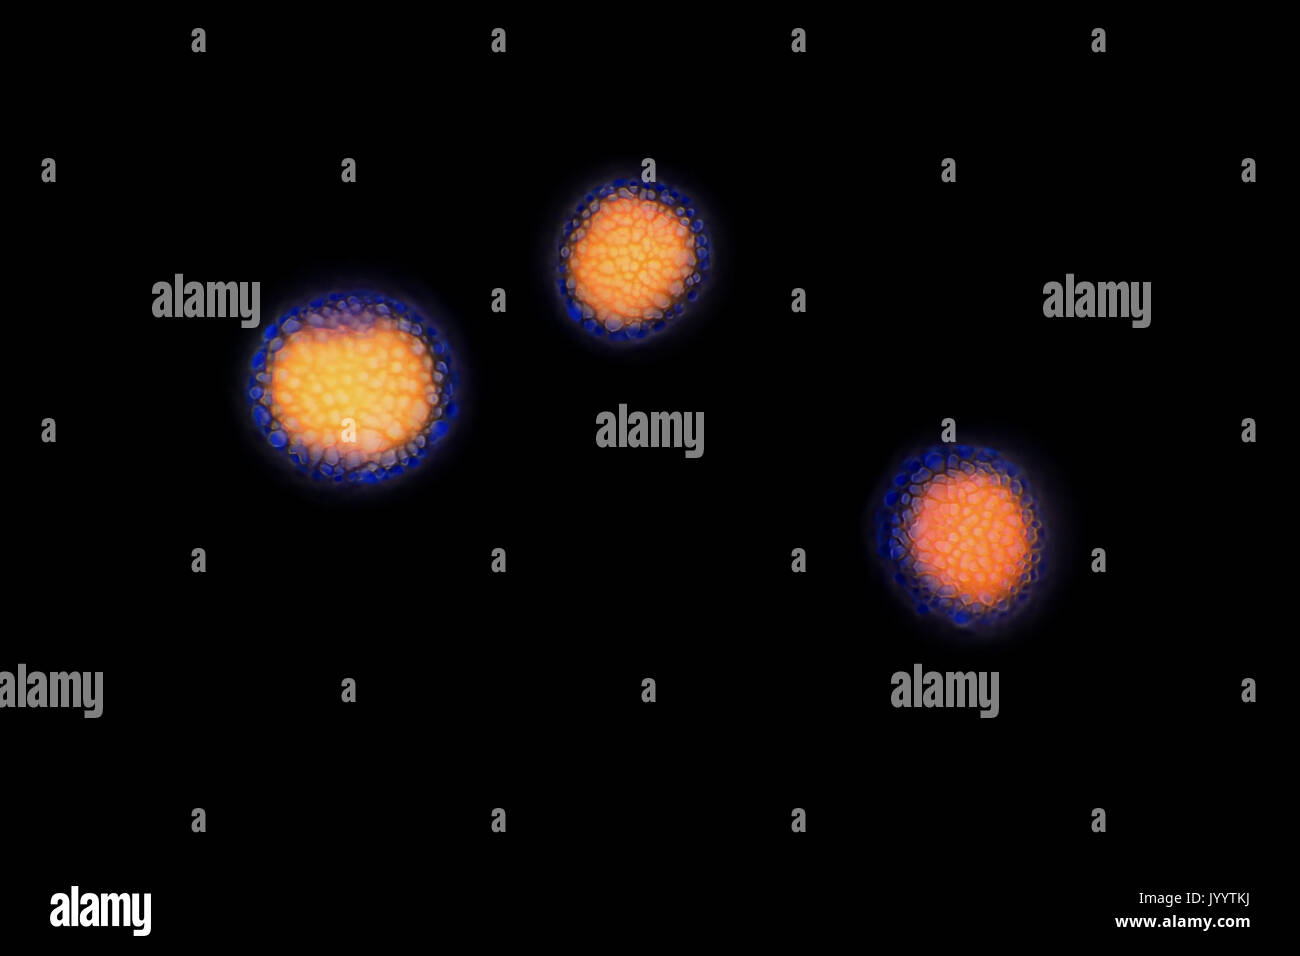 Grains de pollen (spores) à partir d'un échantillon d'air, tachés de bleu de méthyle, l'inversion de champ lumineux light micrograph, la taille de chaque particule ~17-22 micromètres Banque D'Images